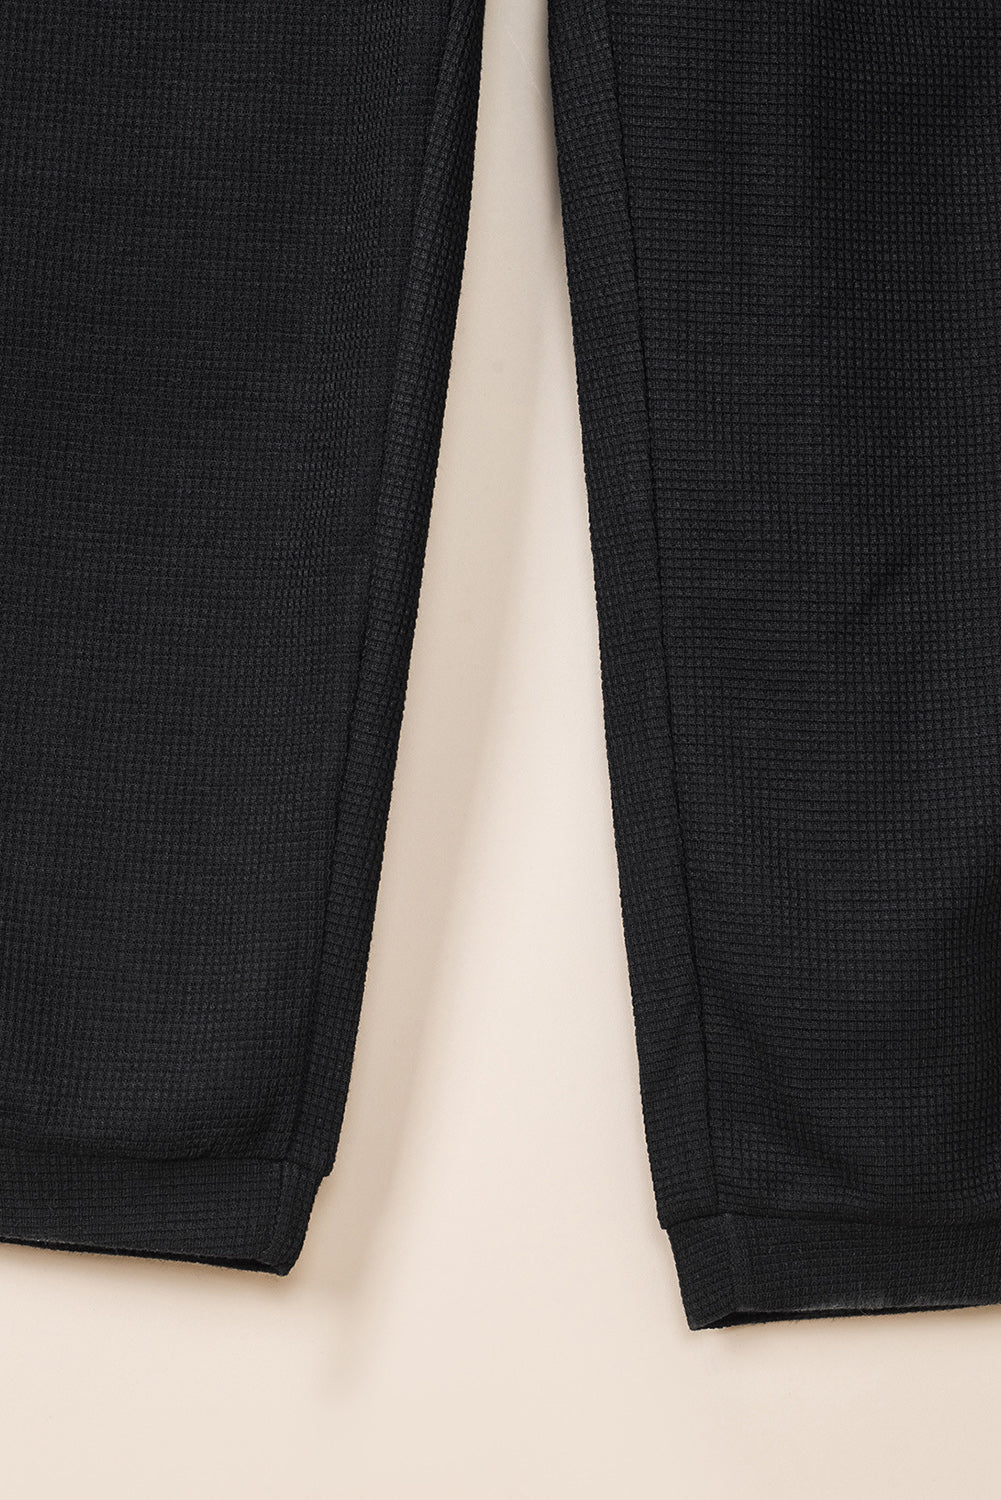 Crni ležerni kombinezon bez rukava s V-izrezom i džepovima s teksturom